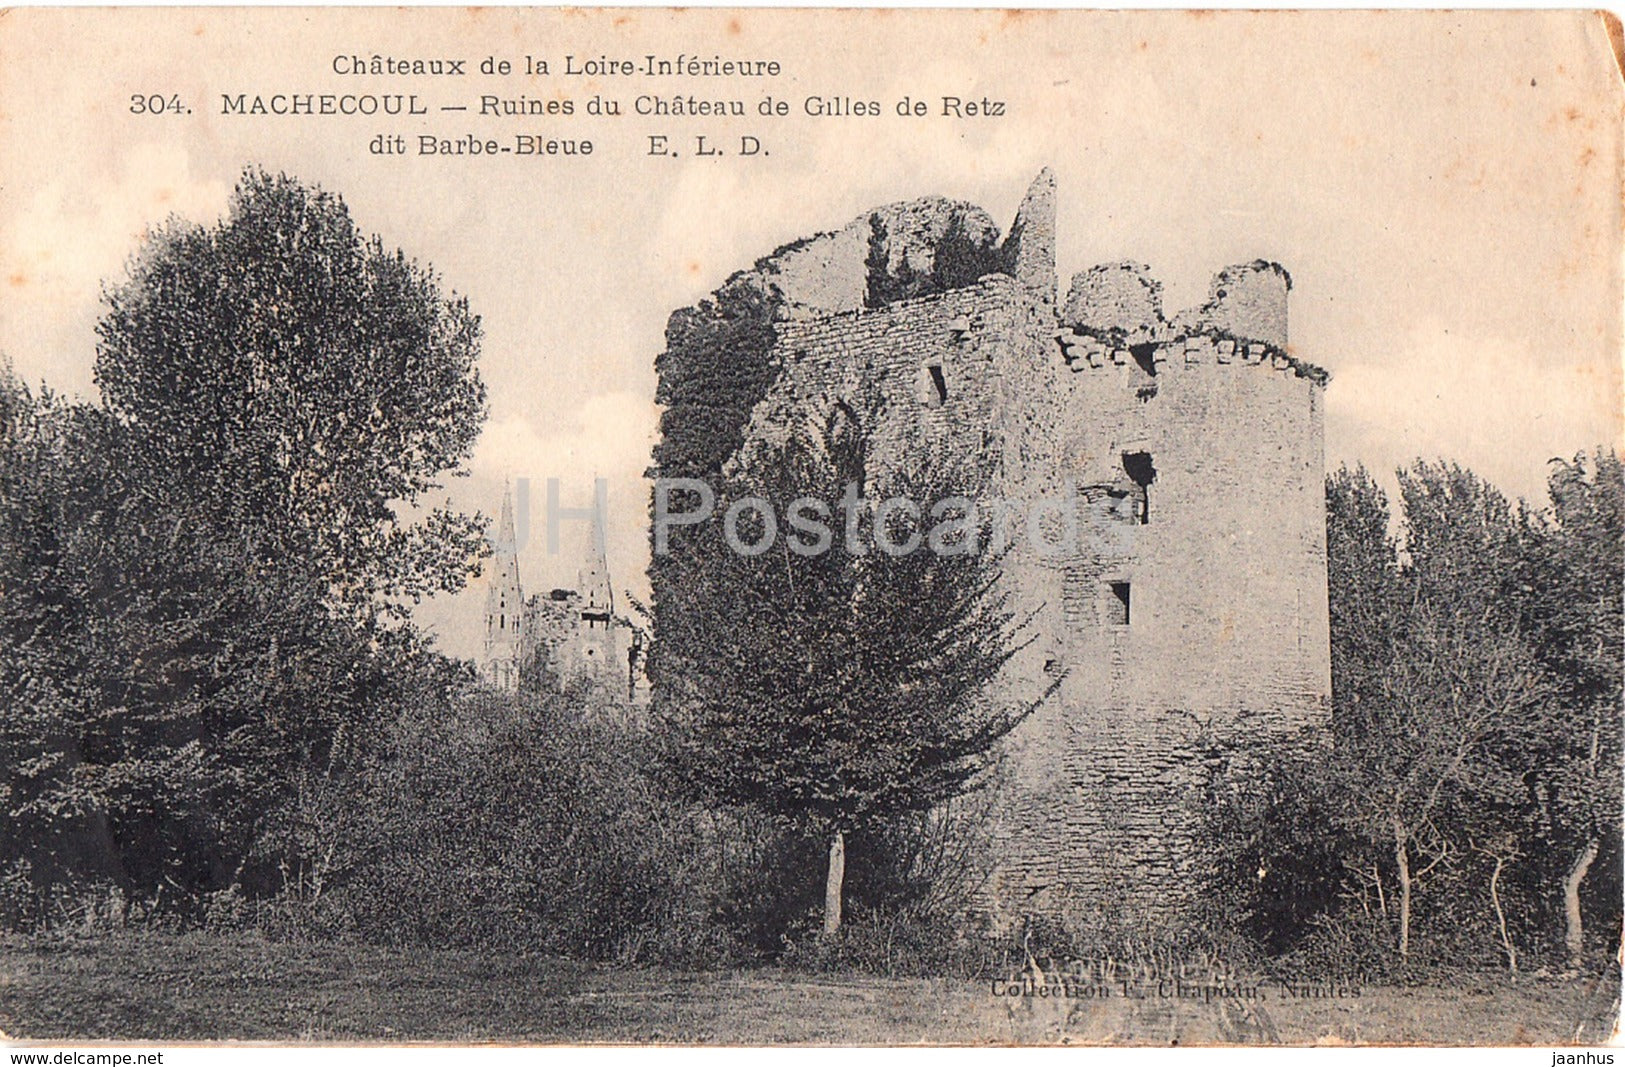 Machecoul - Ruines du Chateau de Gilles de Retz dit Barbe Bleue - 304 - castle ruins - old postcard - France - unused